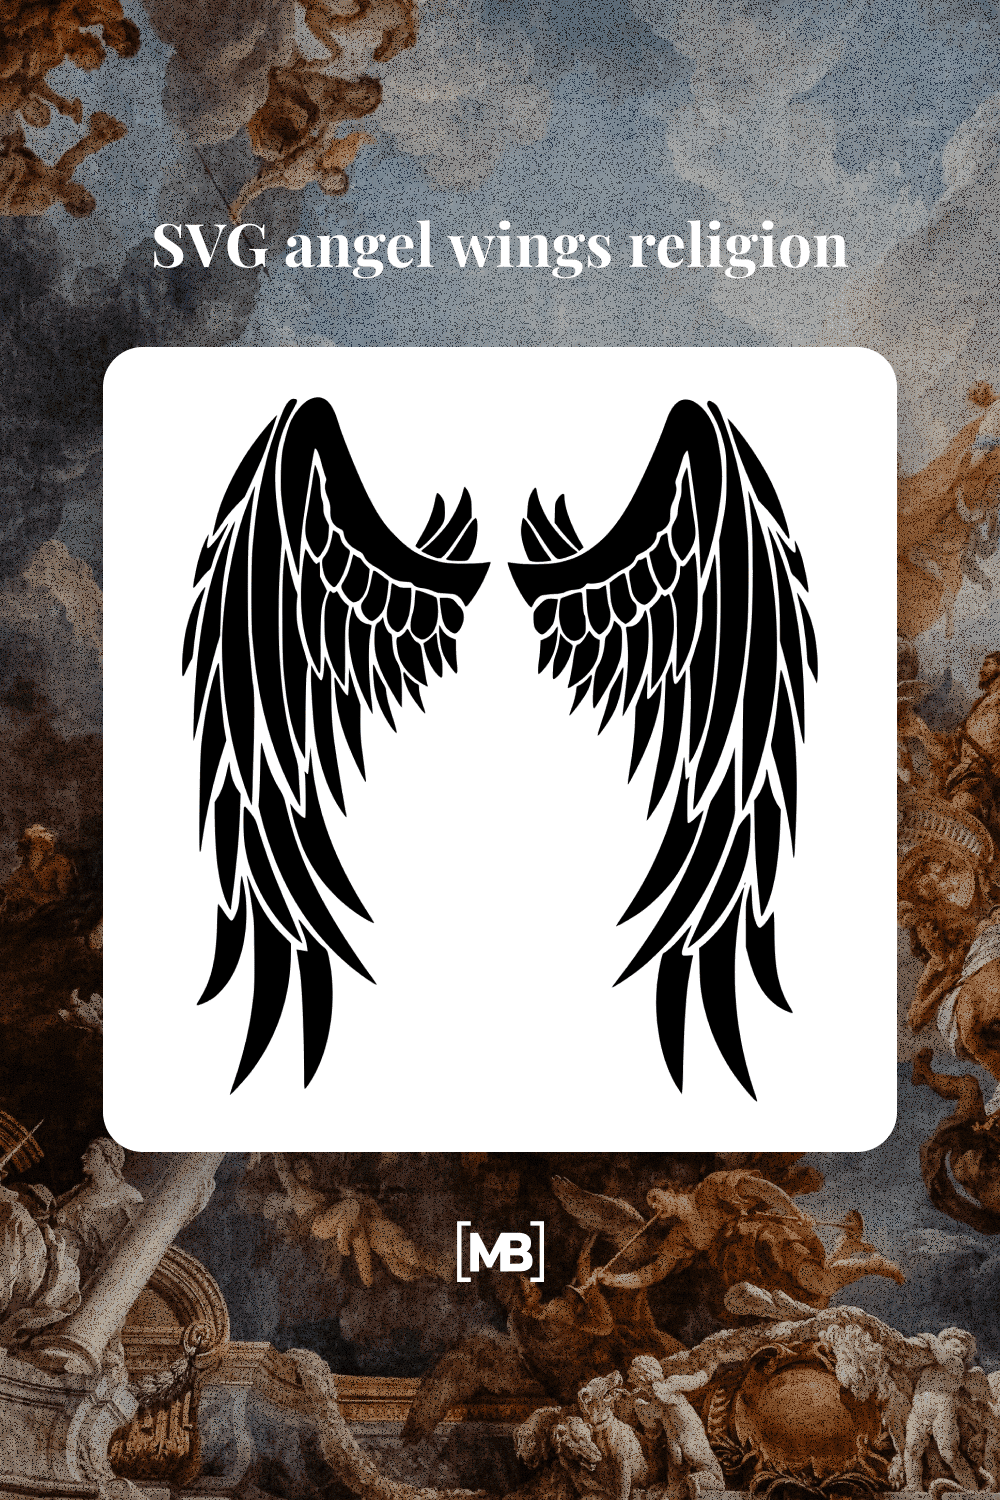 Image of angel wings in black.